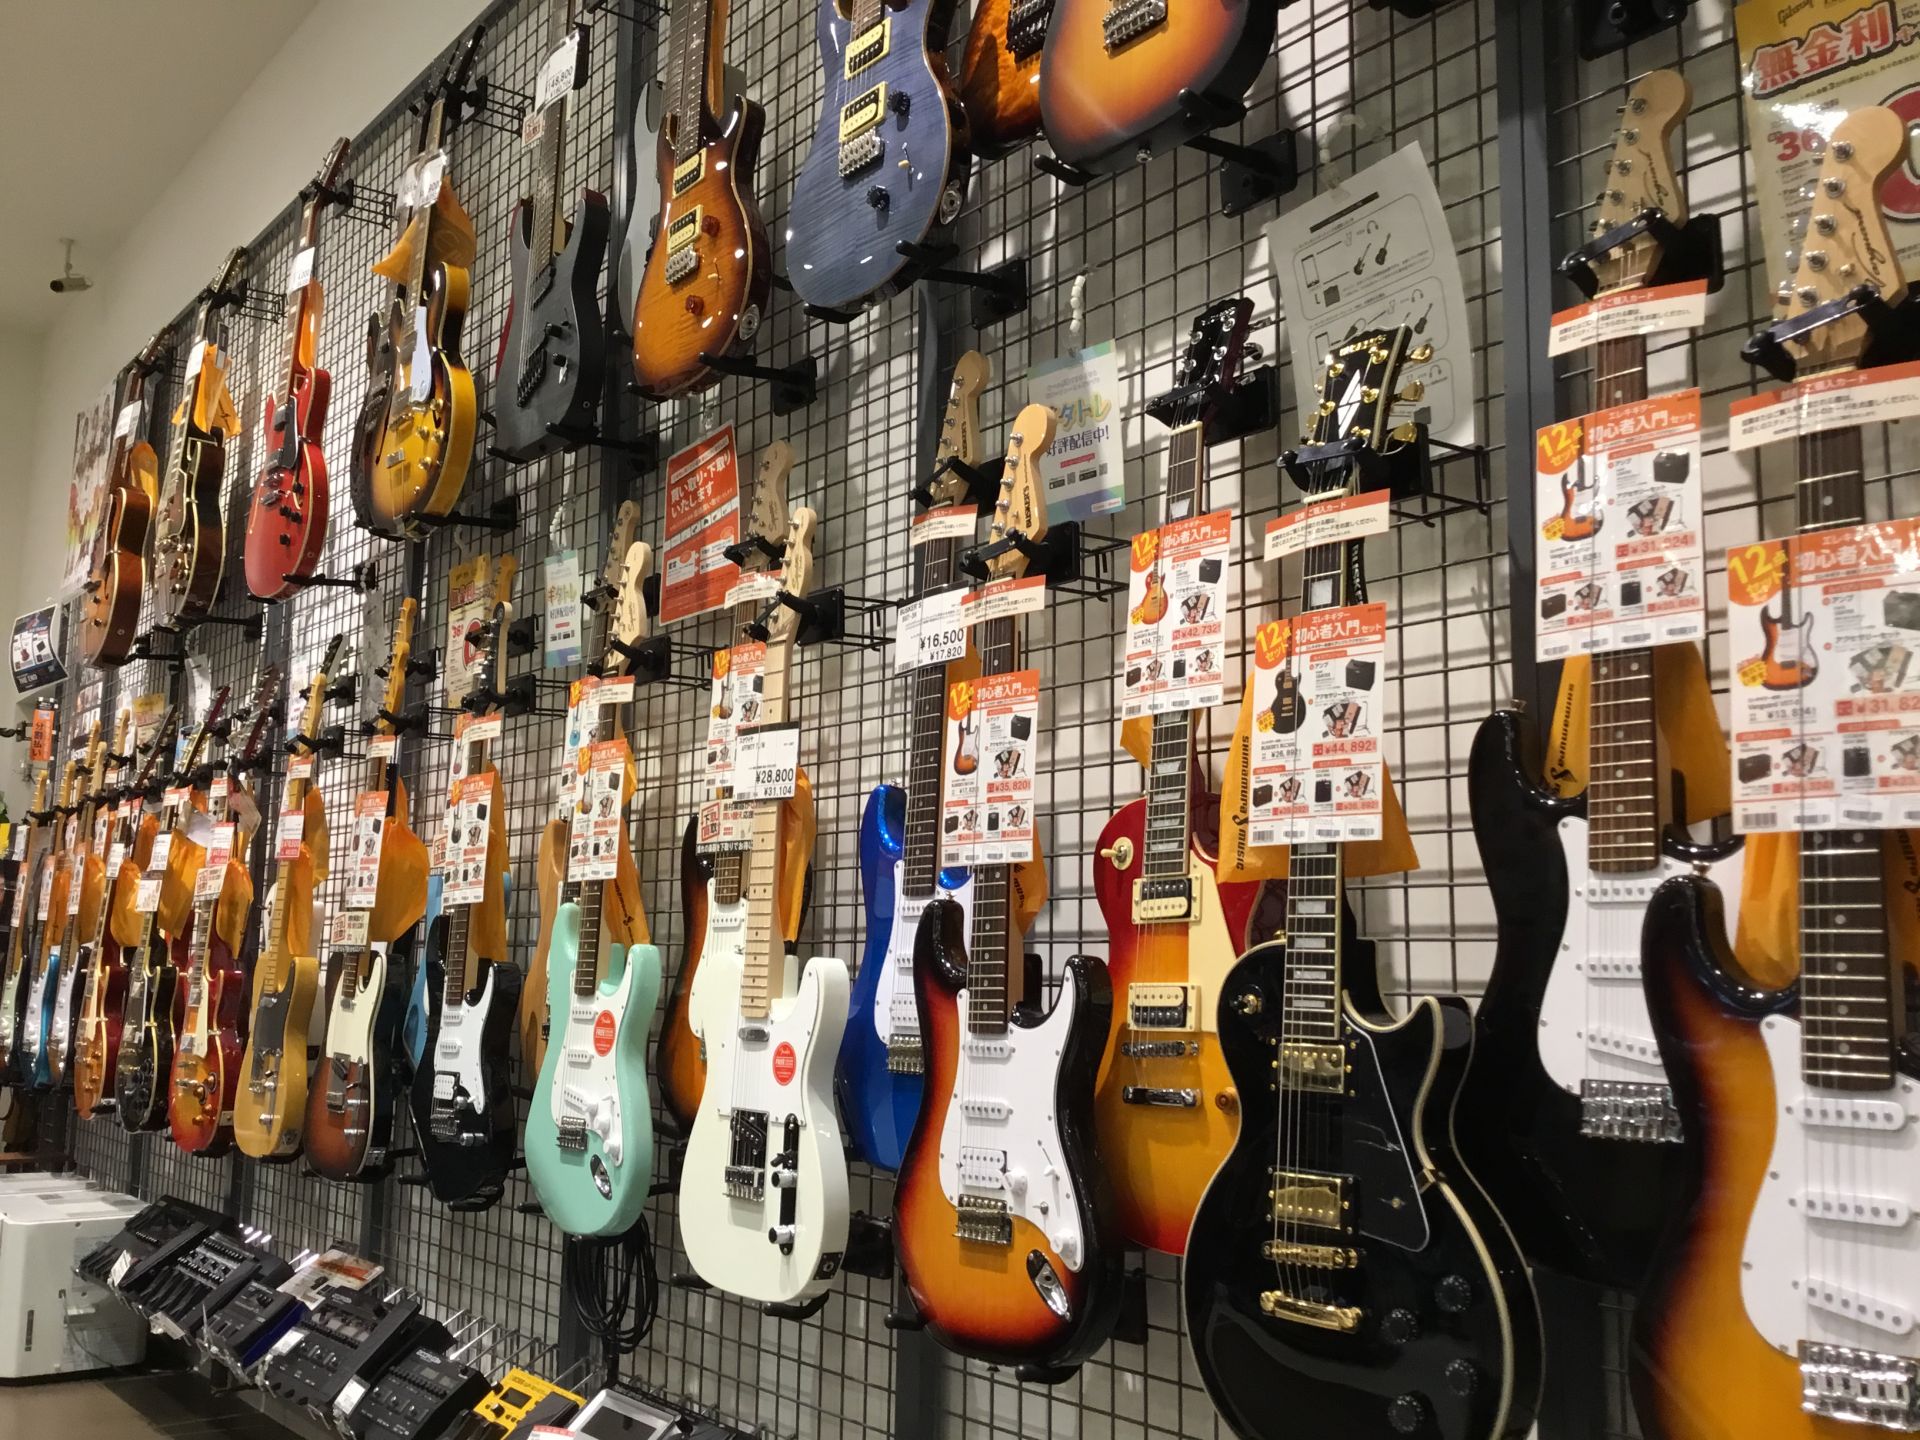 ギター エレキギター初心者セットのご案内です イオンモール日吉津店 店舗情報 島村楽器